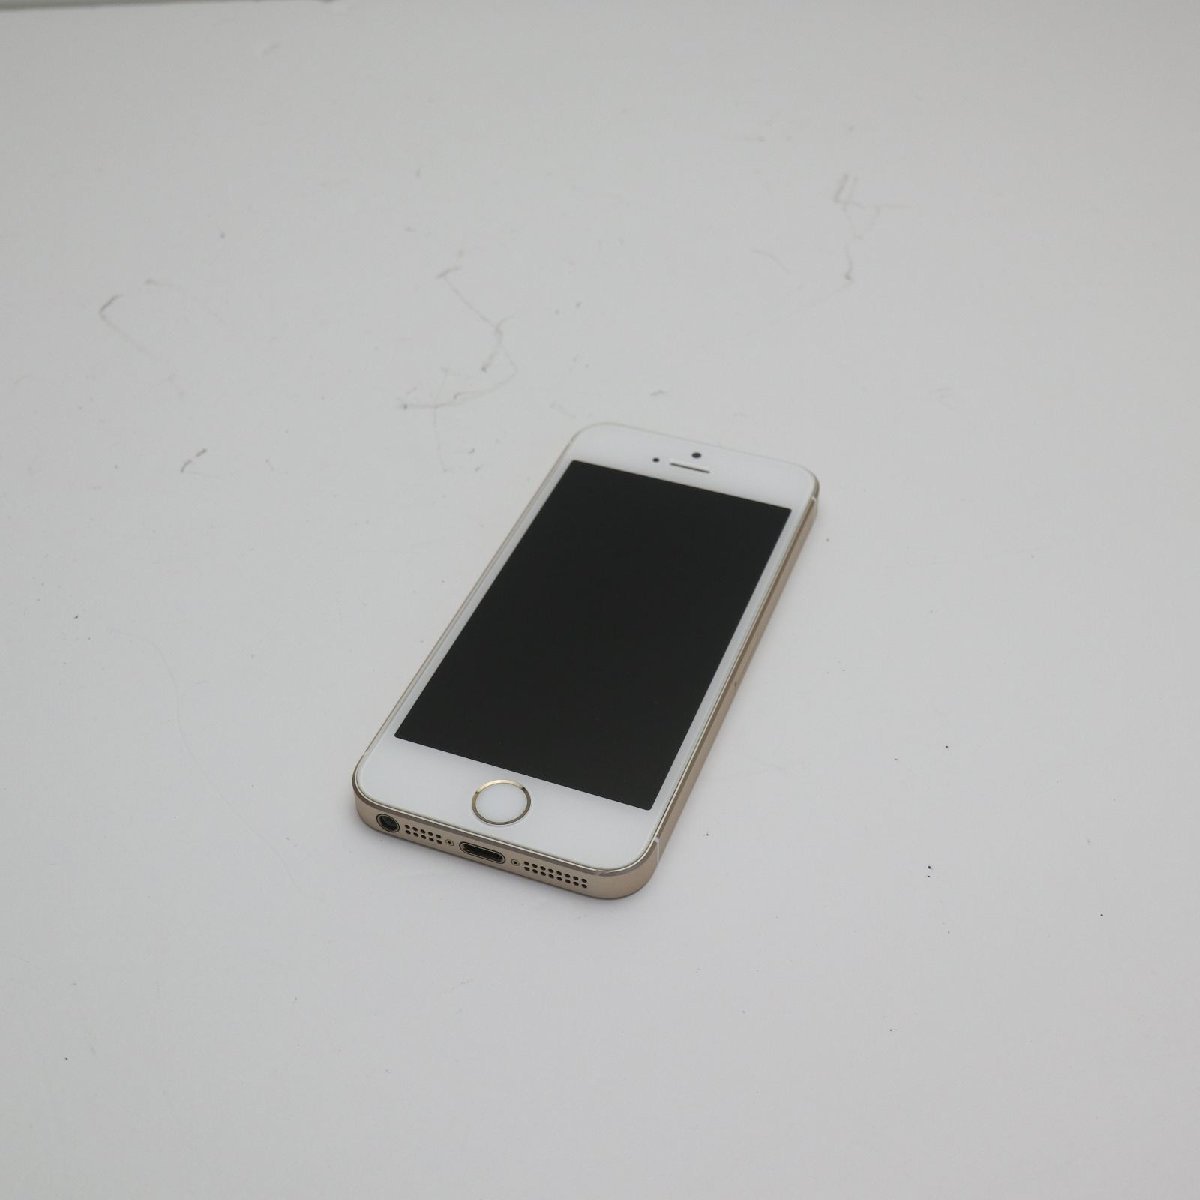 超美品 SIMフリー iPhoneSE 16GB ゴールド 即日発送 スマホ Apple 本体 白ロム あすつく 土日祝発送OK